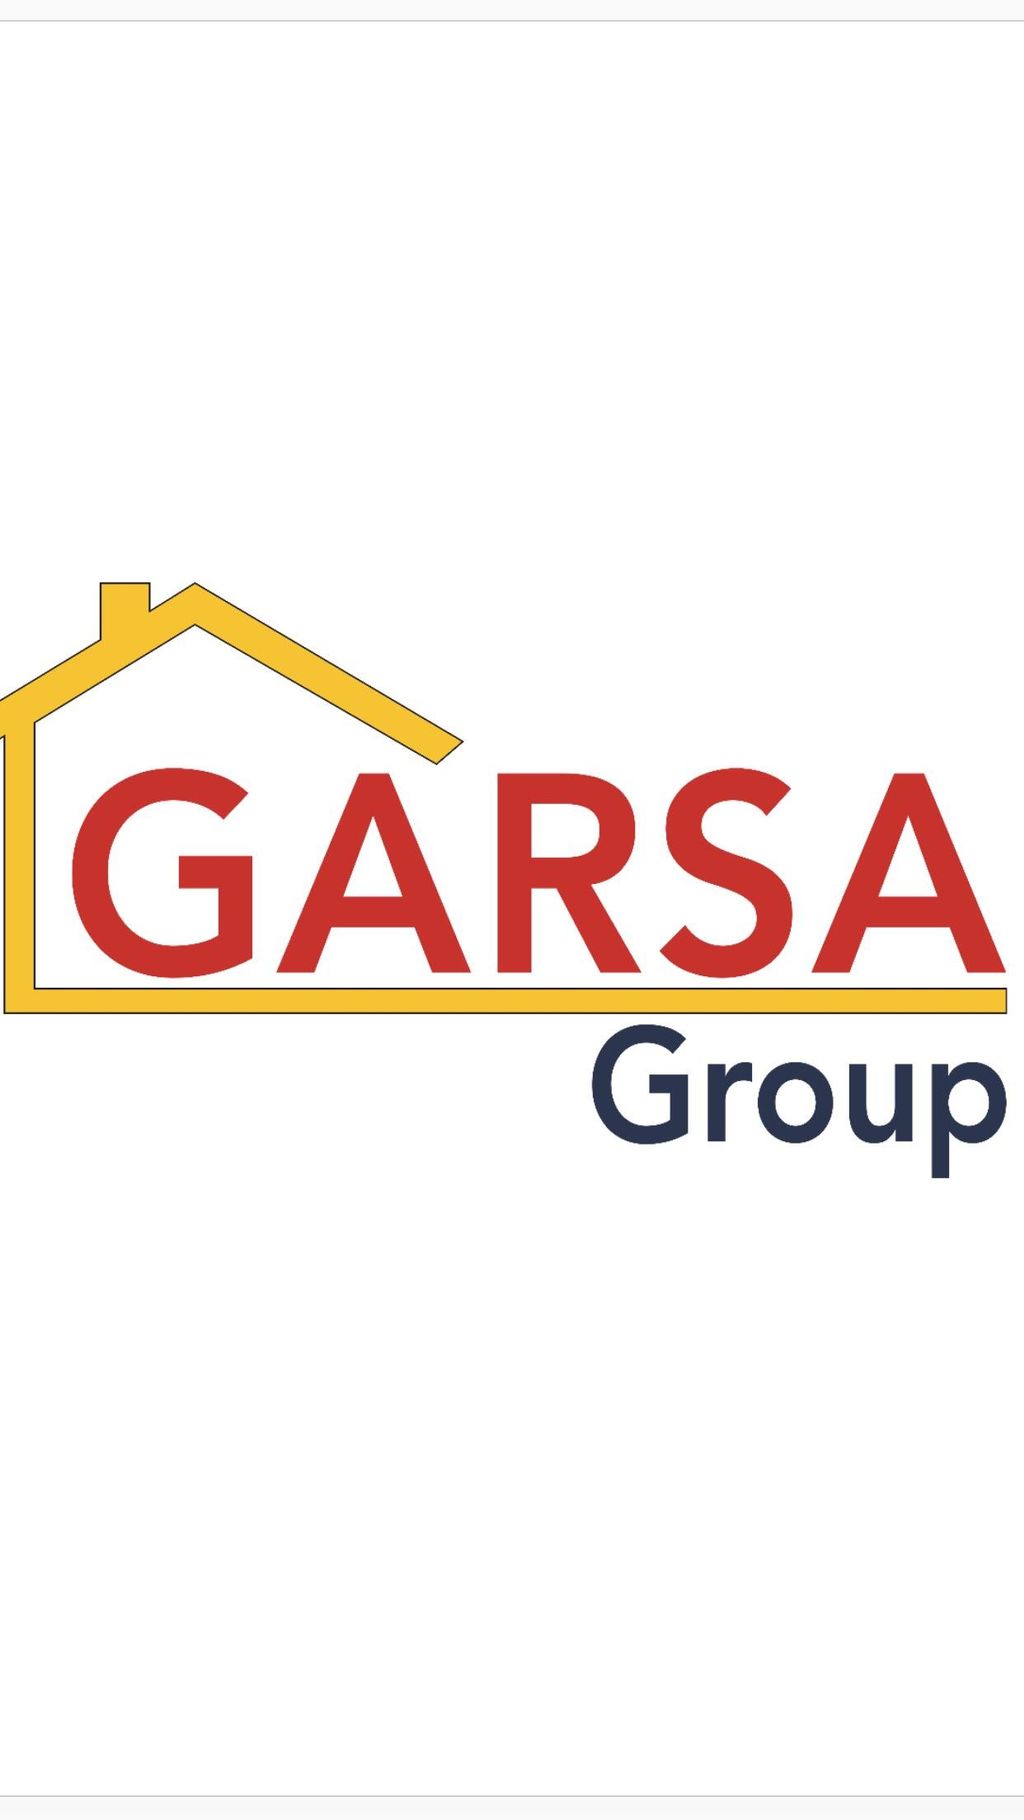 Garsa Group LLC